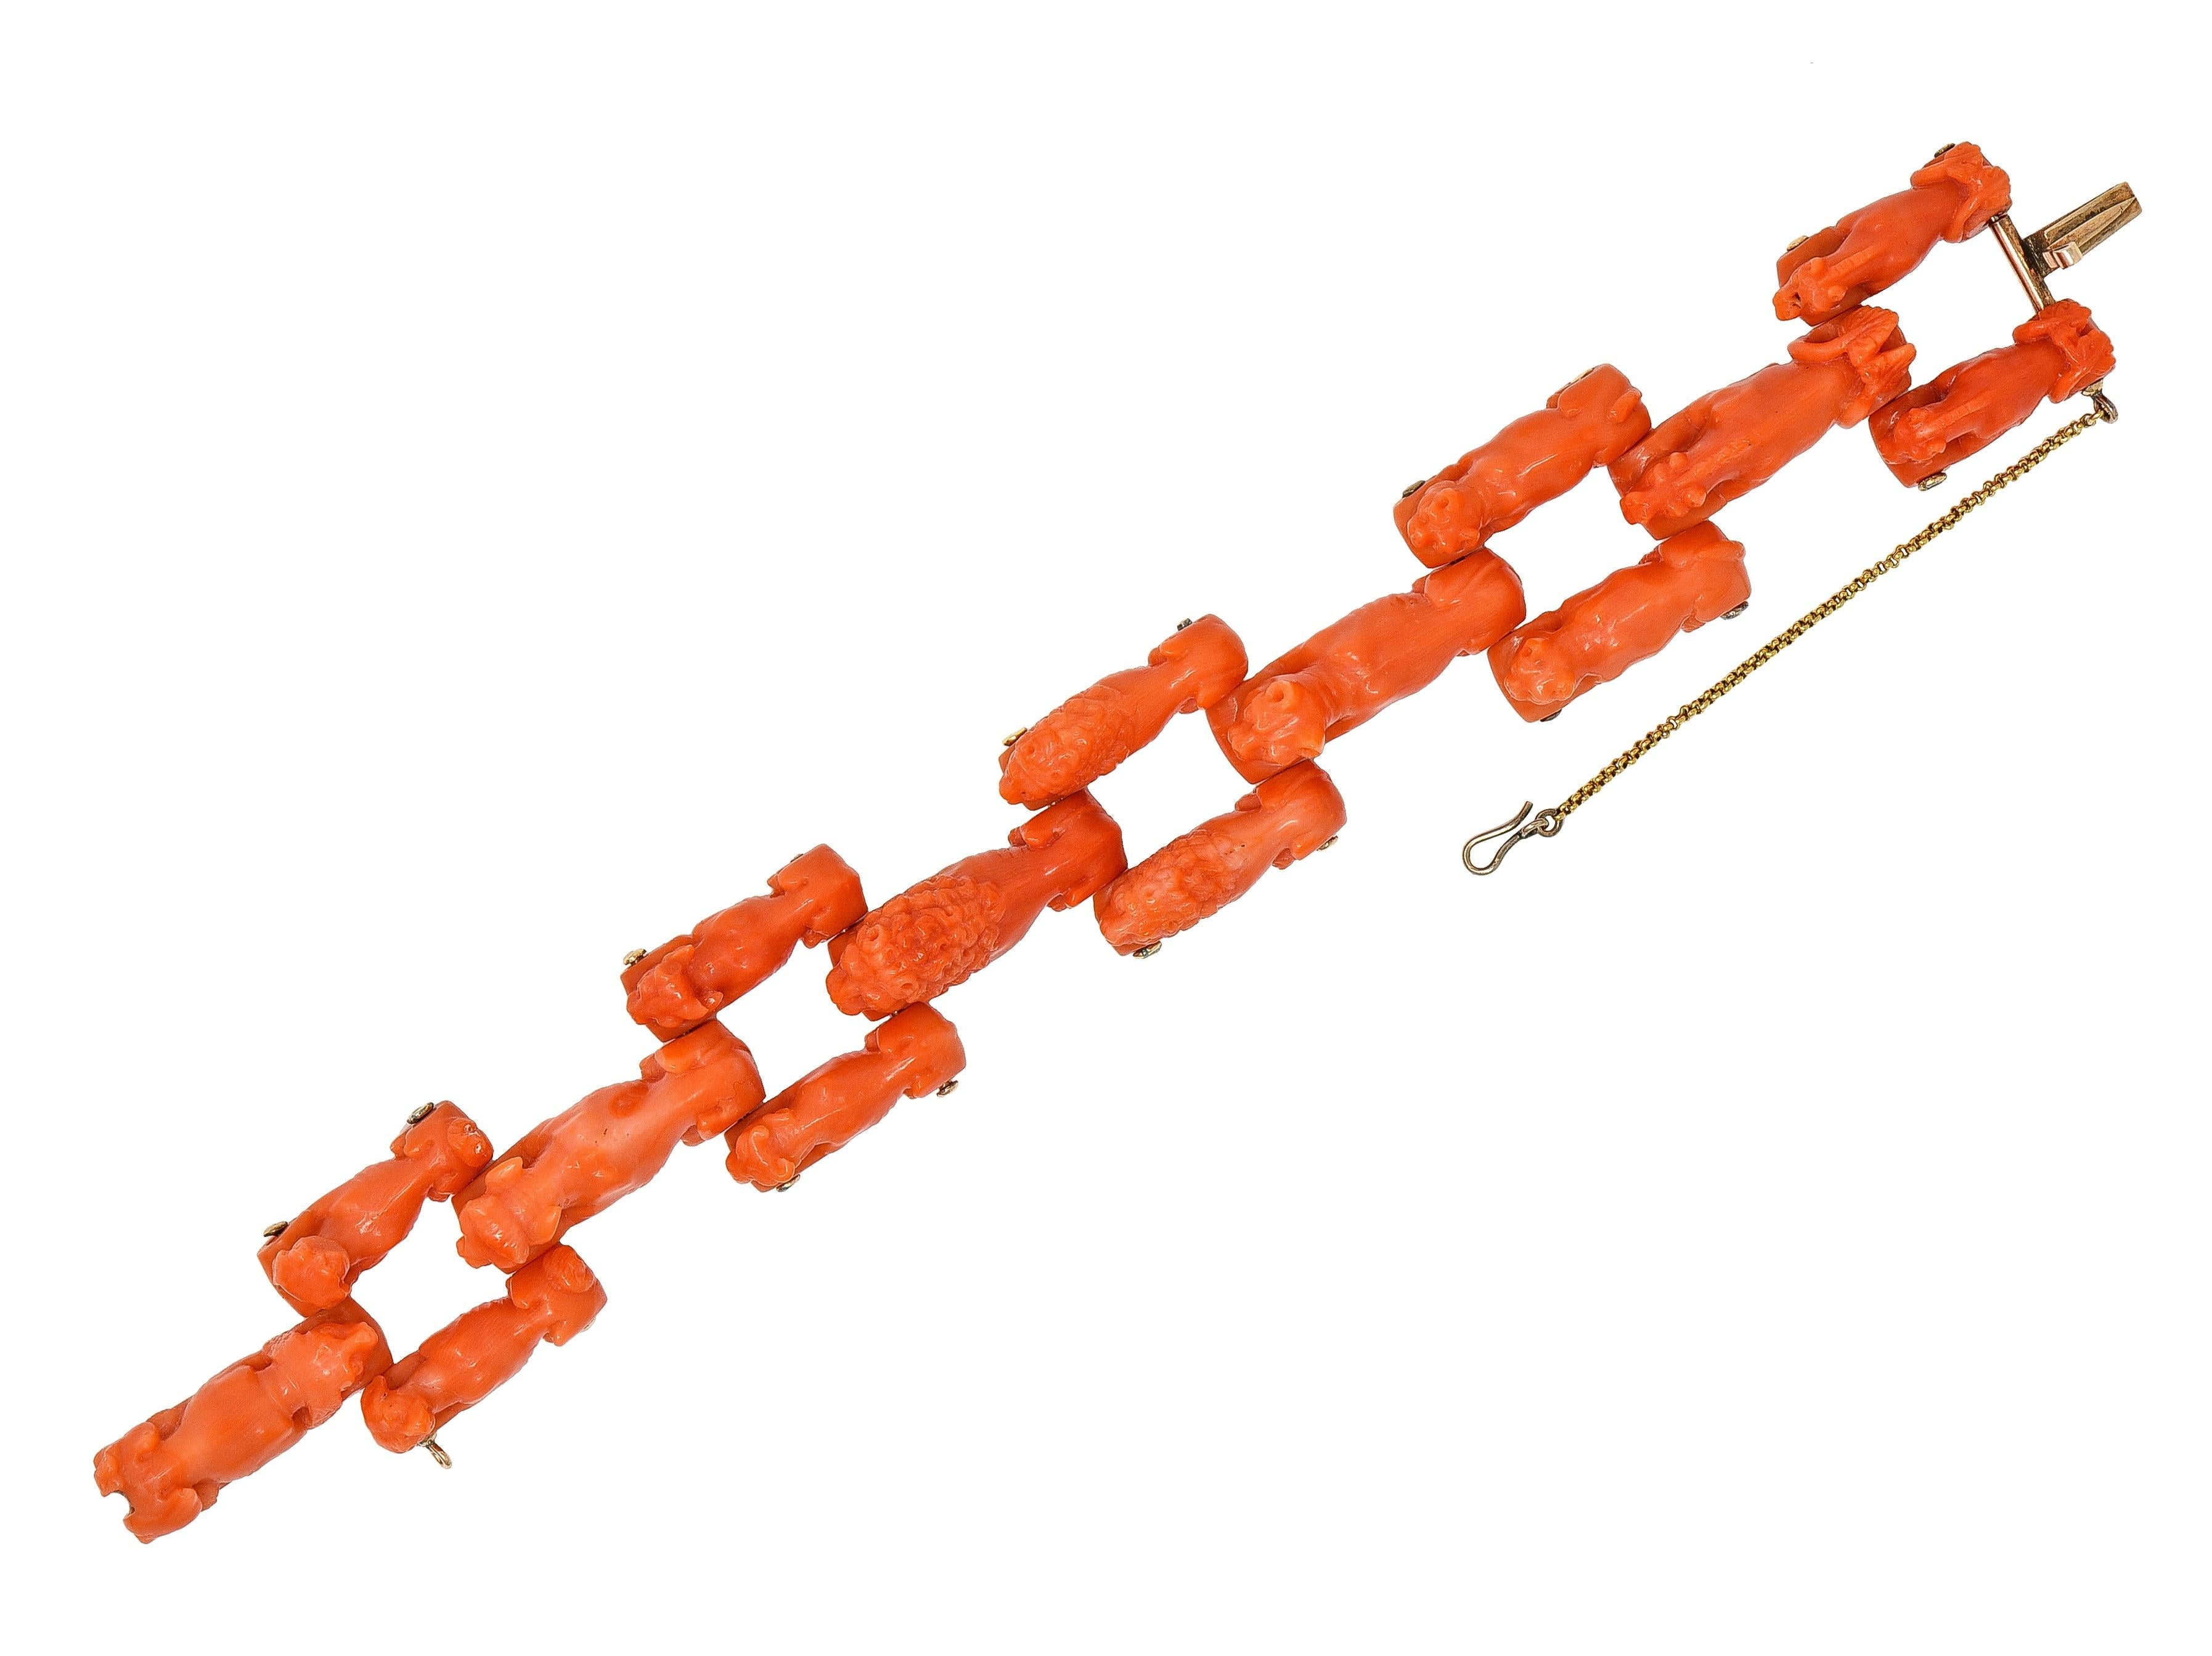 Quadratisches Gliederarmband mit Scharnieren, bestehend aus verschiedenen geschnitzten Korallentieren
Darstellung von maßstabsgetreuen Panthern, Löwen, Kühen und Hunden mit gewellten, beblätterten Schwänzen
Undurchsichtige rötlich-orange Farbe mit